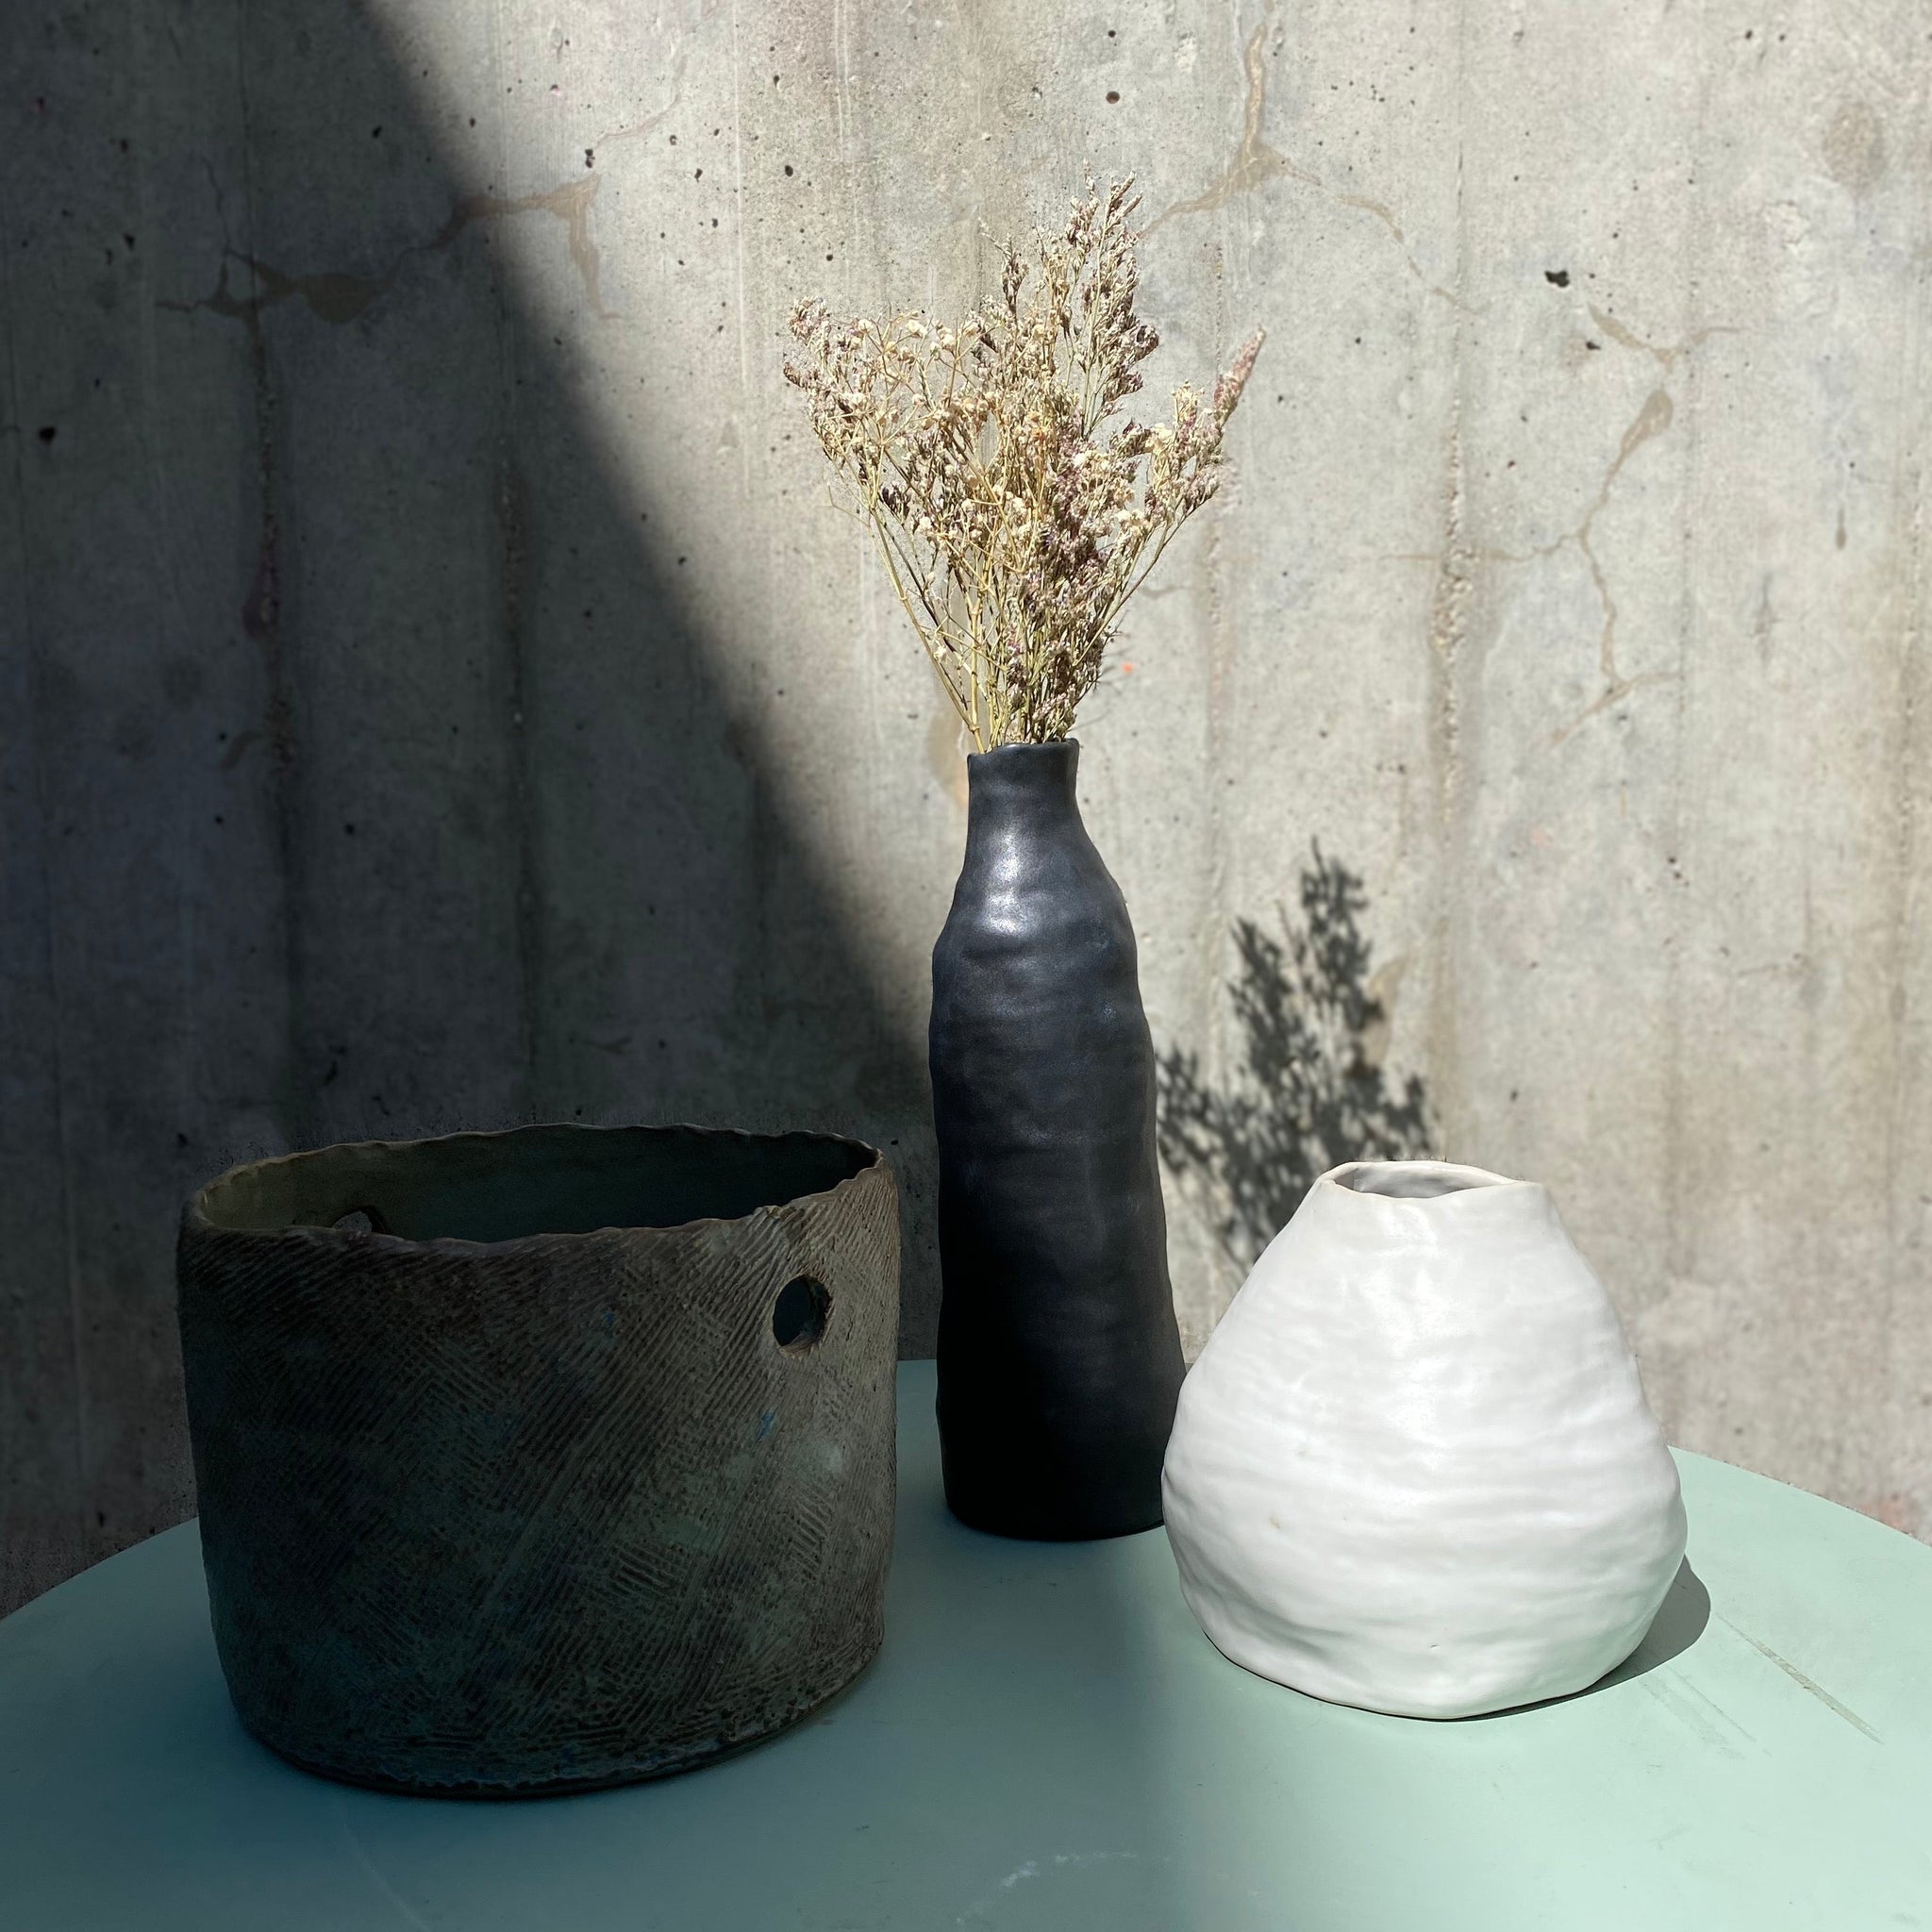 Vase Organic • Façonnage à la main • 1 séance • Renens-Gare